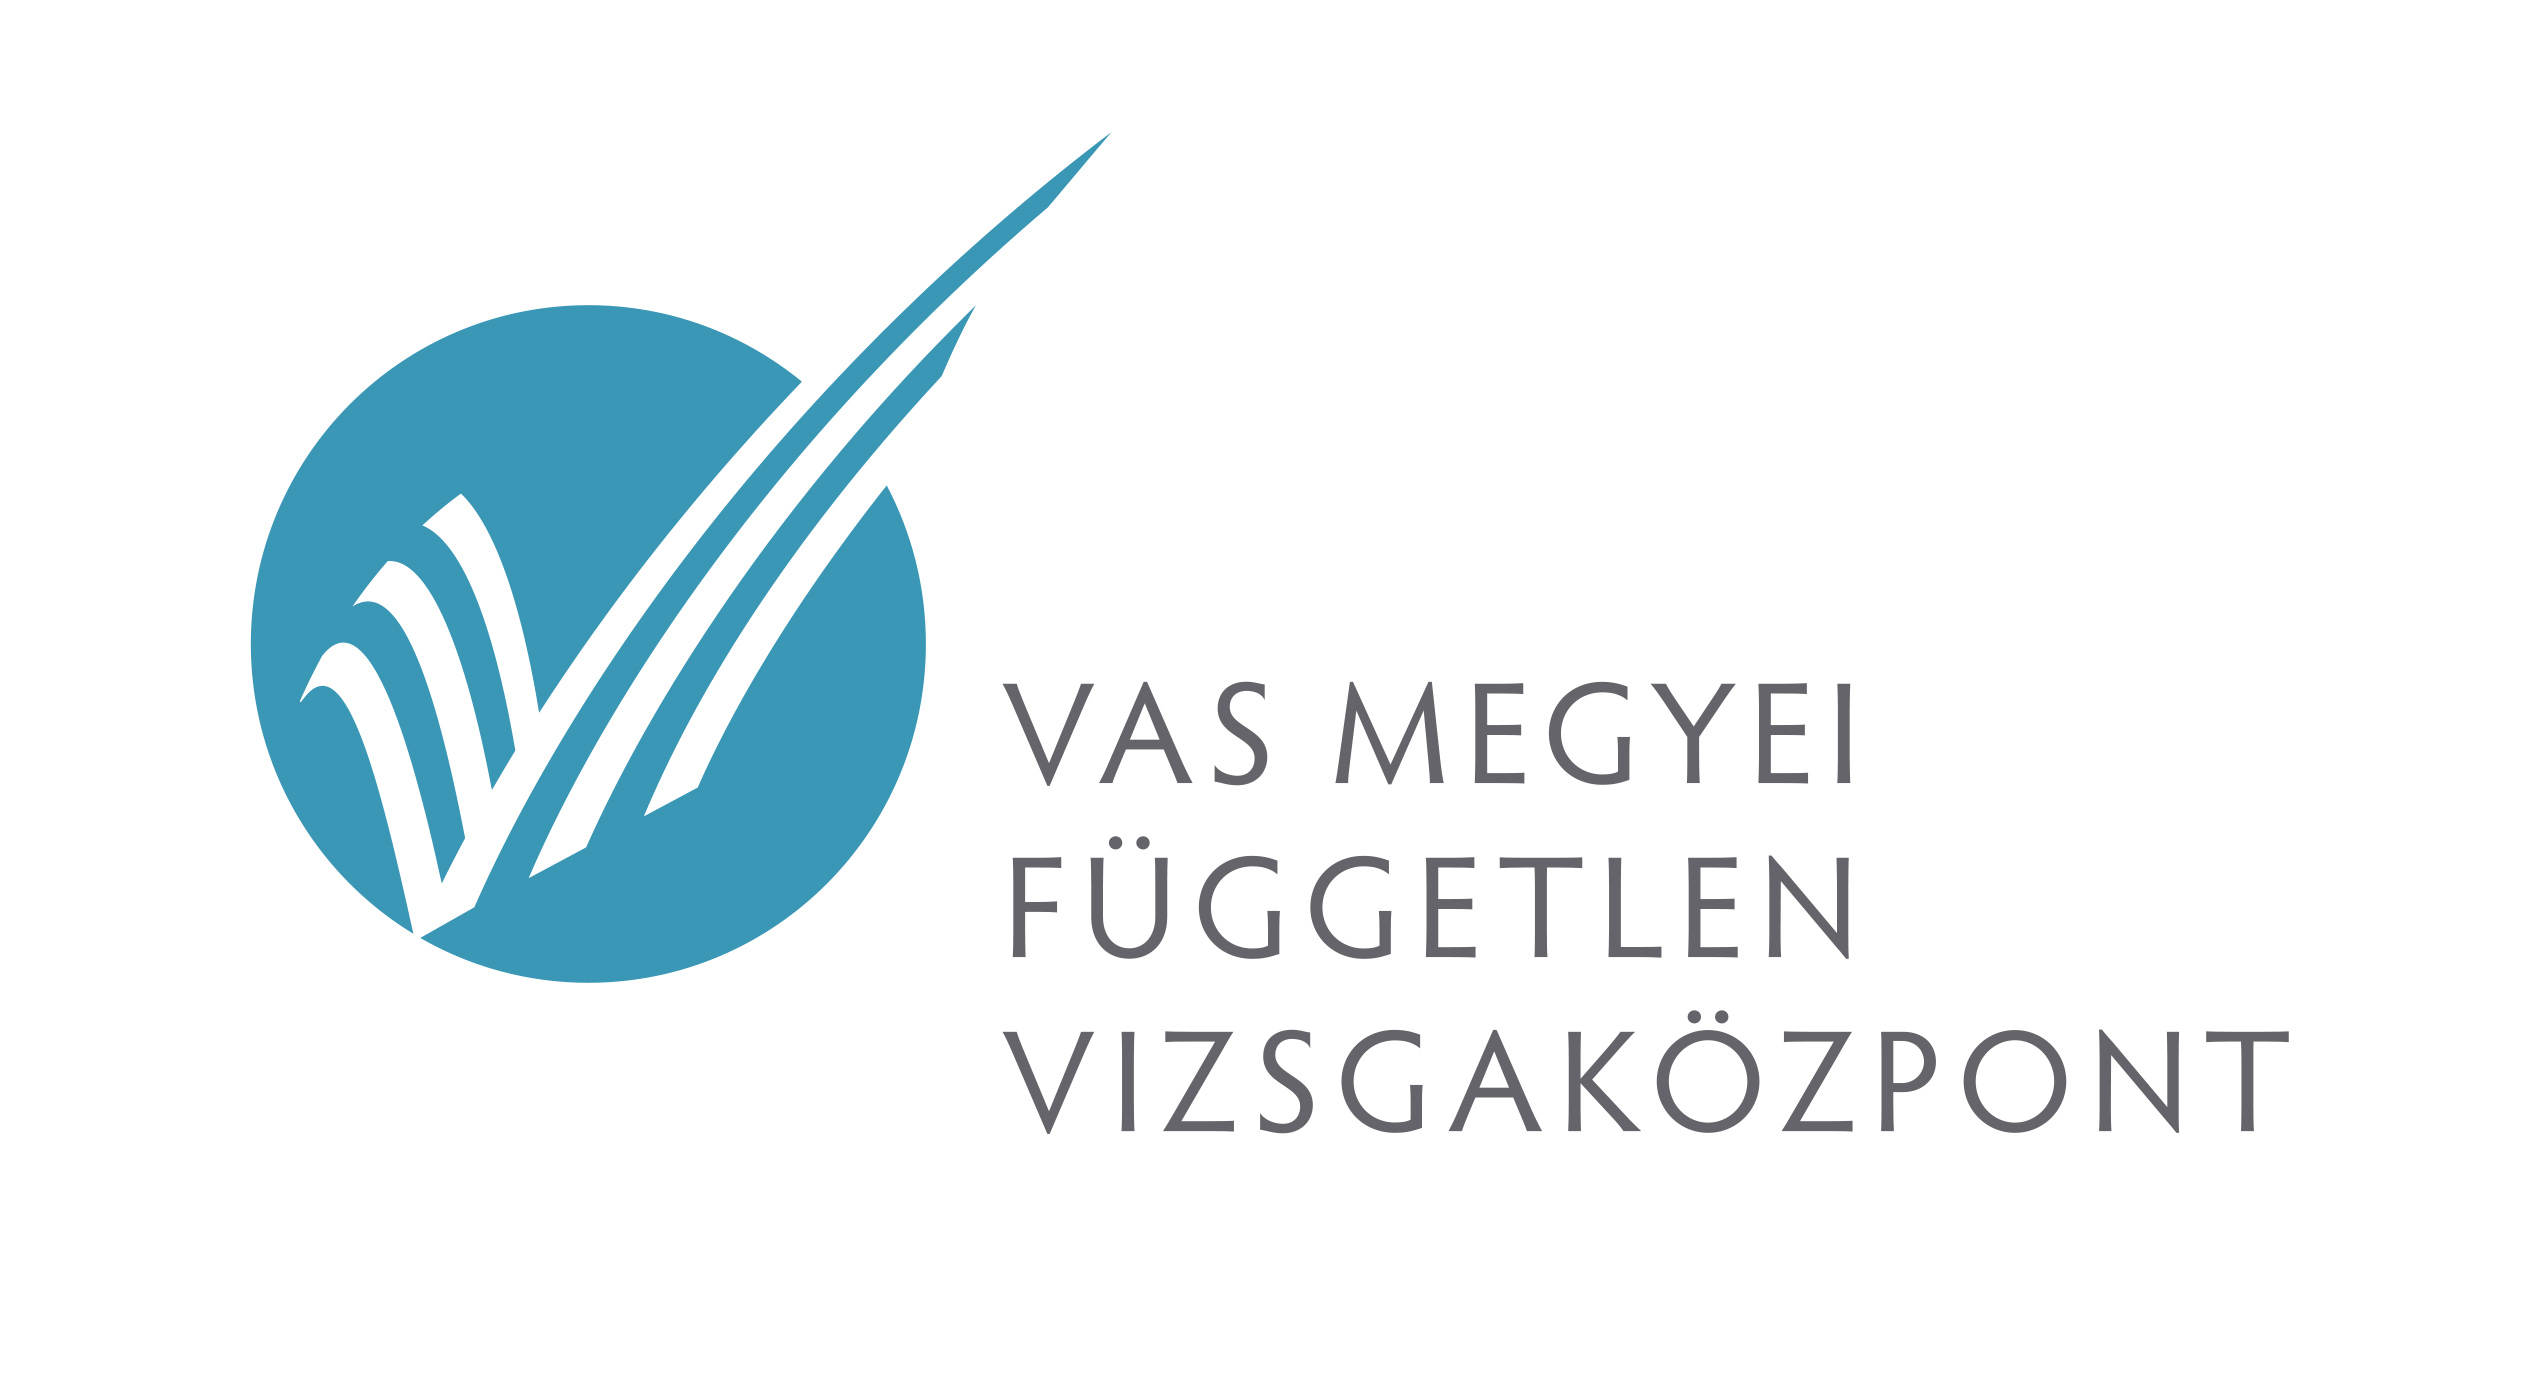 Vizsgaközpont logója